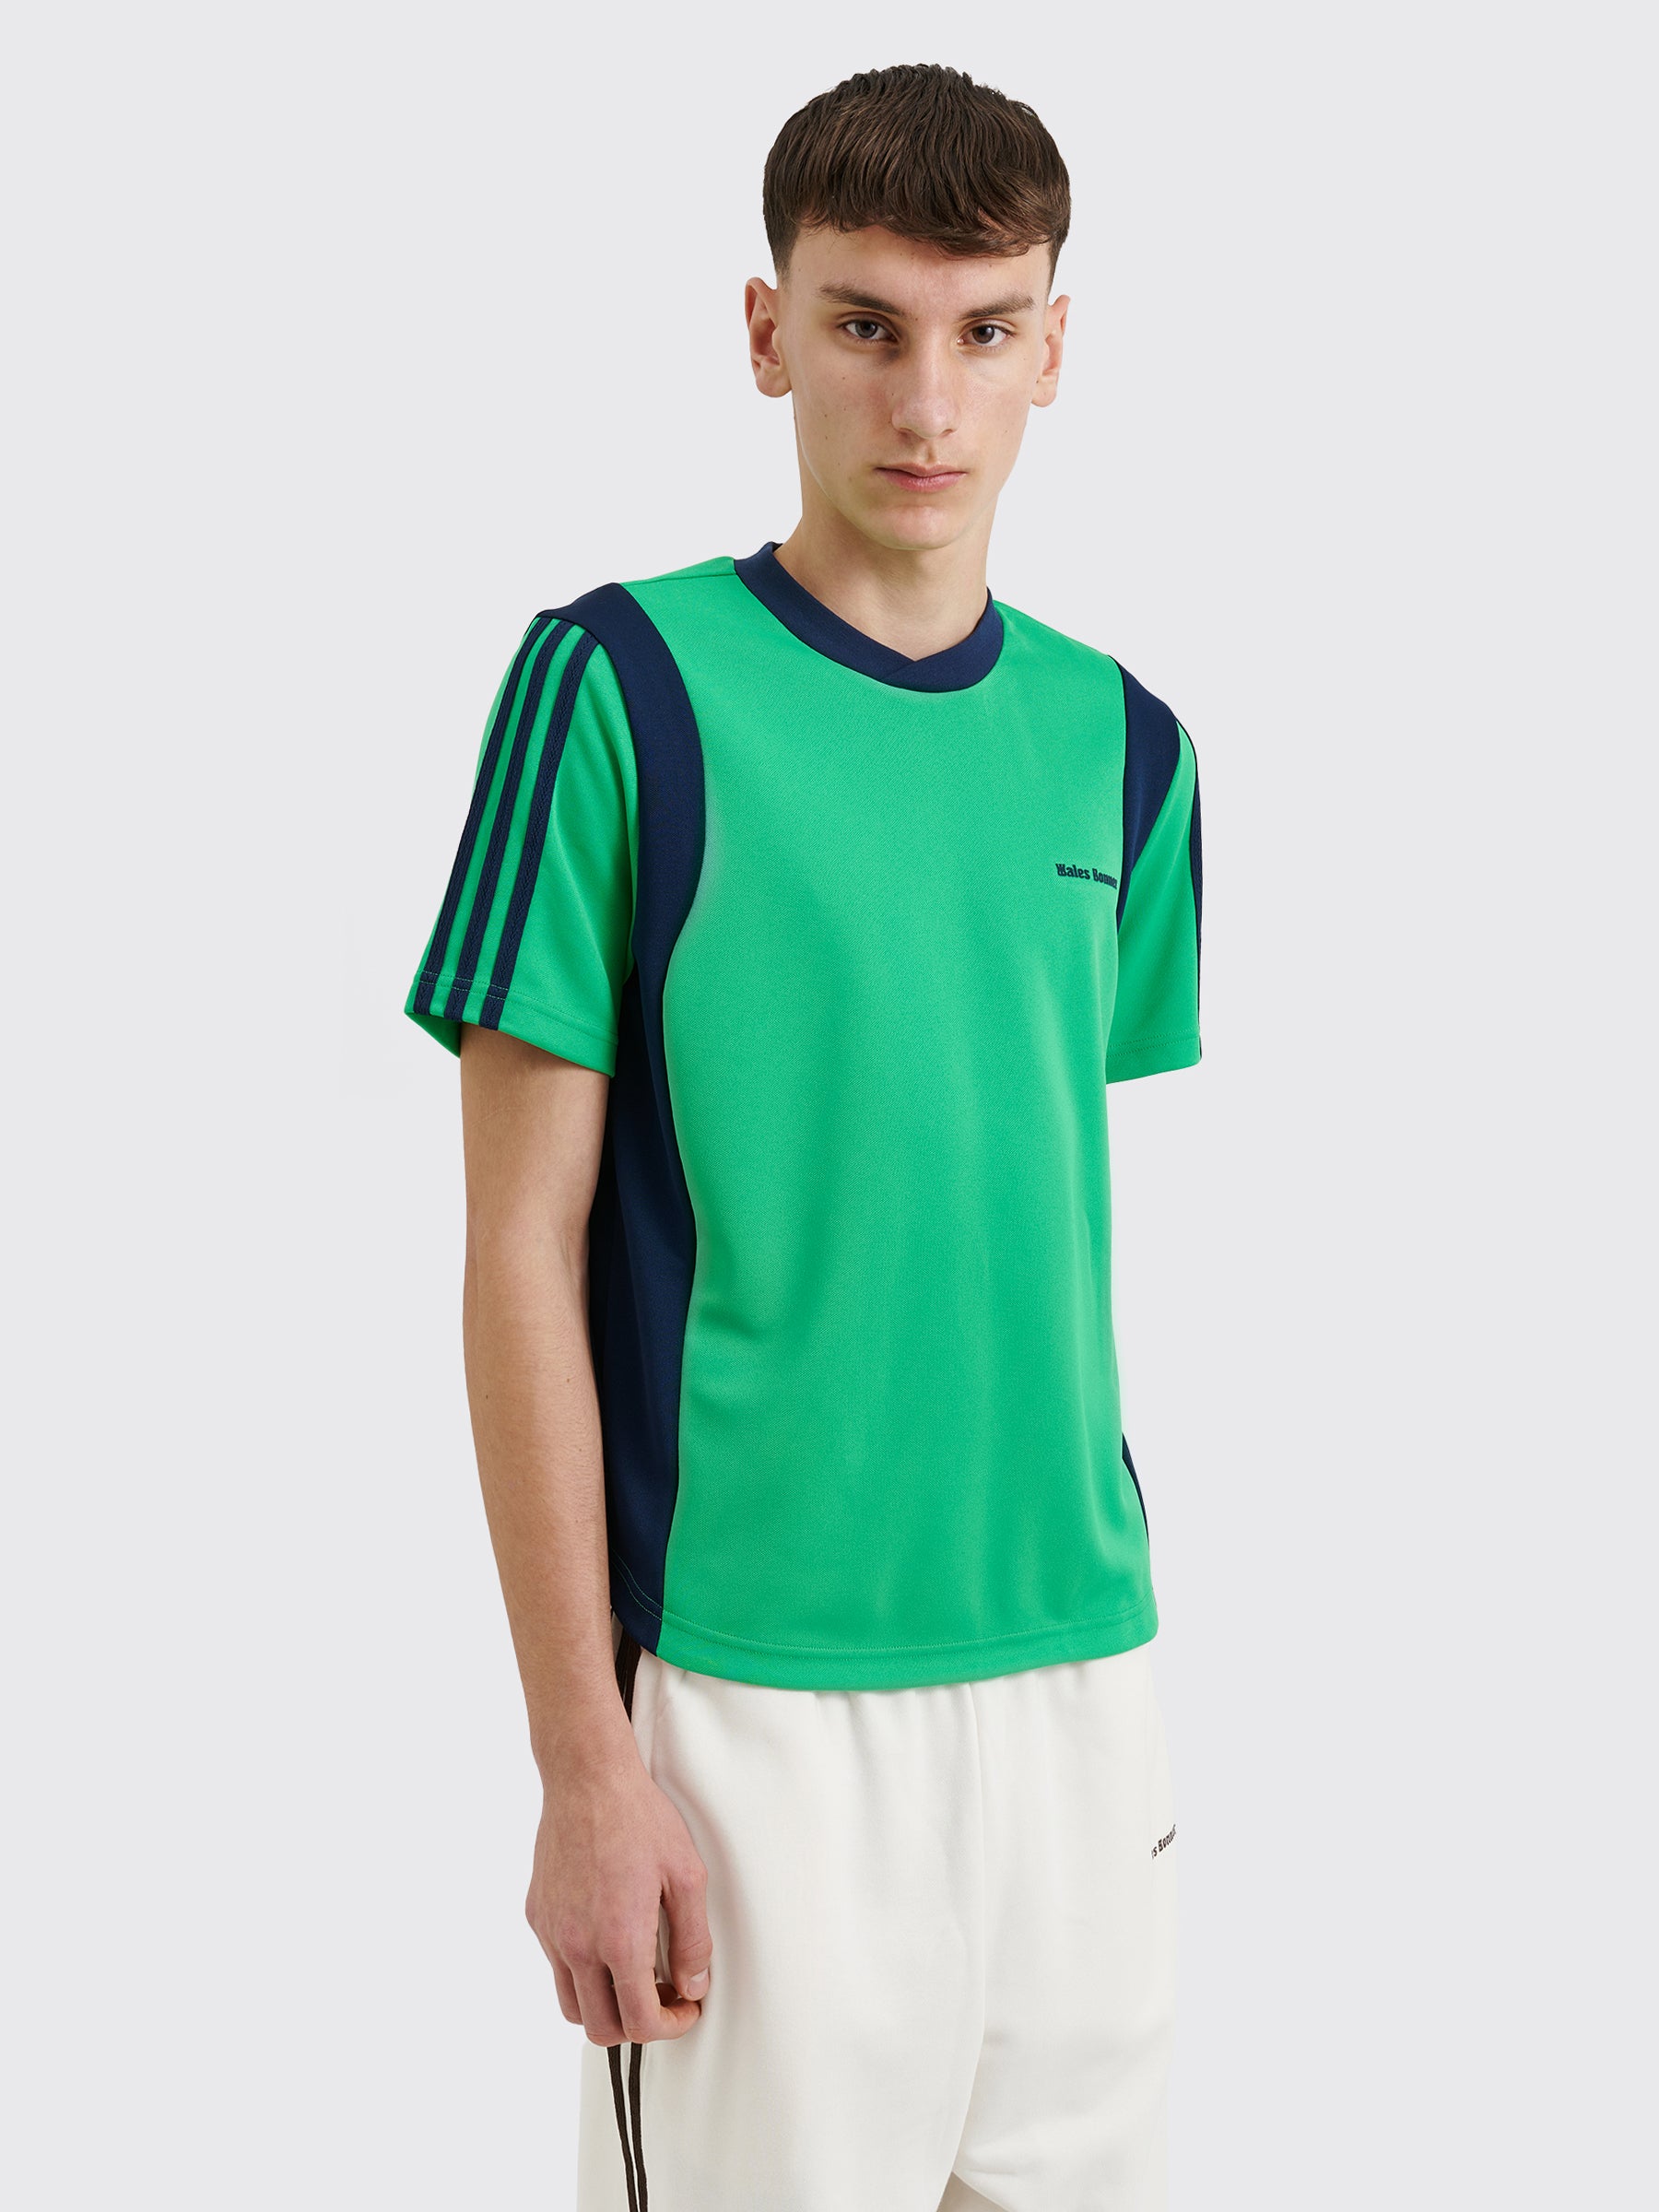 adidas Originals by Wales Bonner Football Shirt Vivid Green